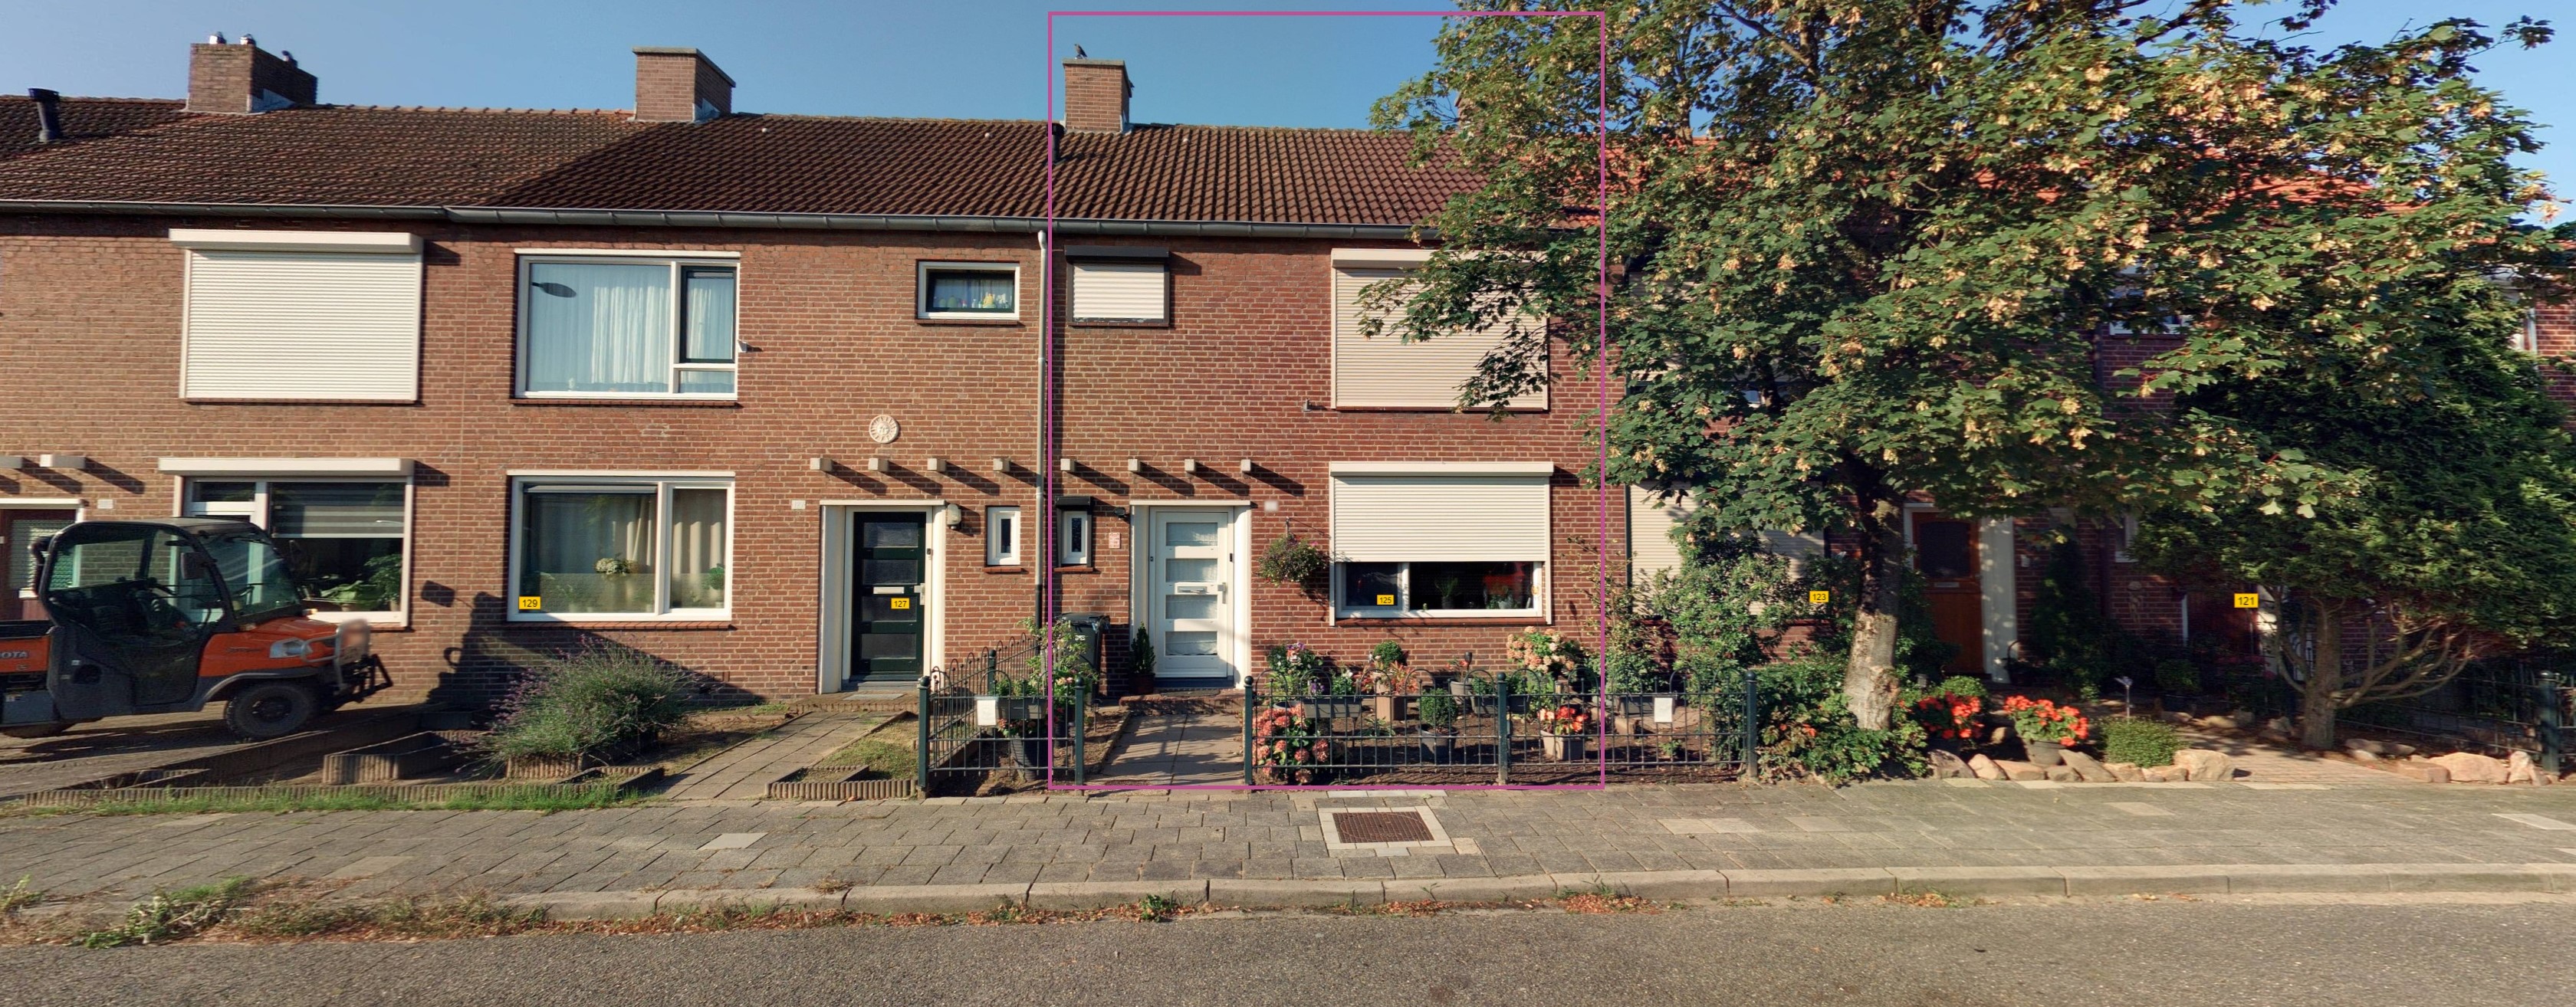 Willem Boyeweg 125, 6591 ZX Gennep, Nederland